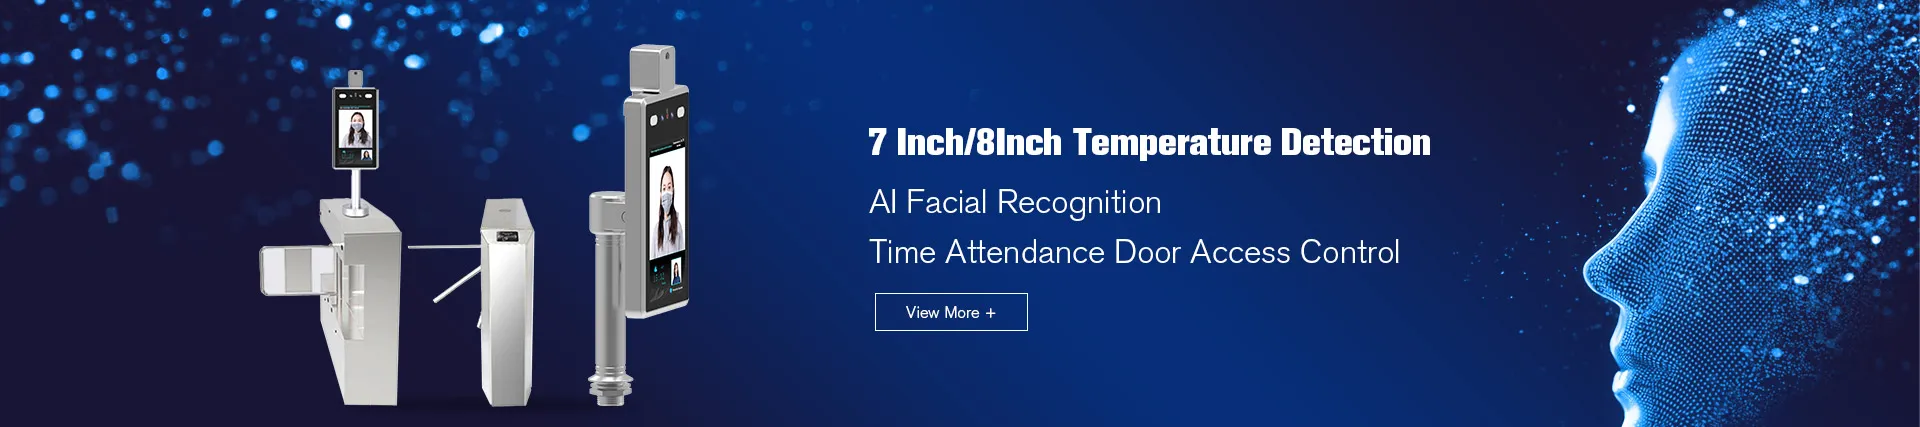 جهاز الكشف عن درجة الحرارة AI التعرف على الوجه /product-list-temperature-detection-ai-facial-recogni